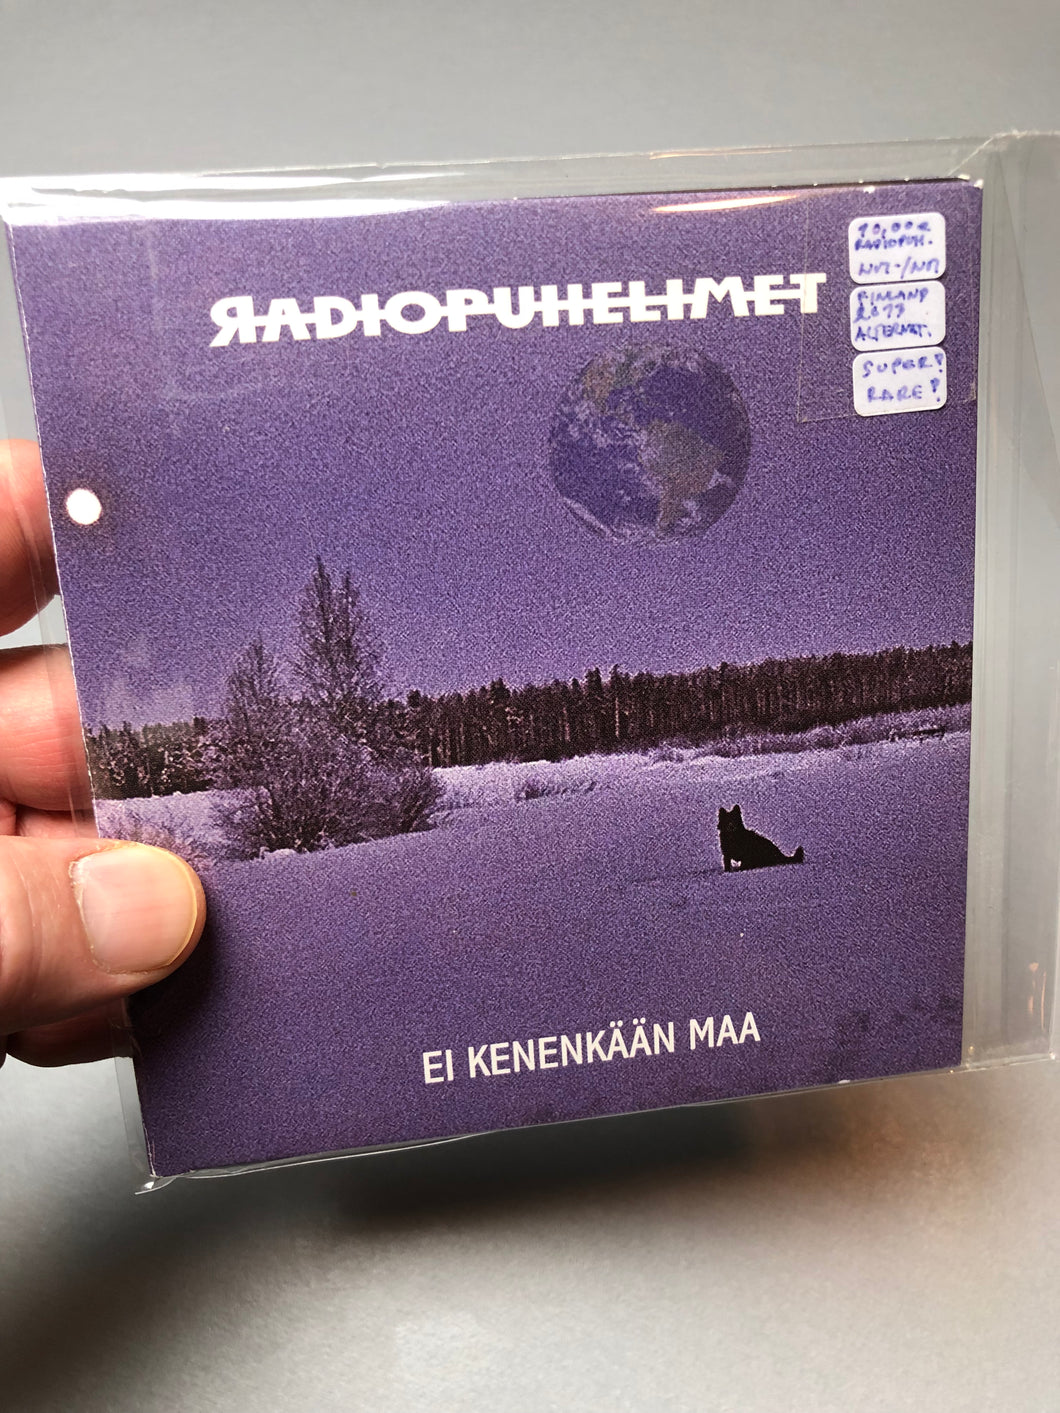 Radiopuhelimet: Ei Kenenkään Maa, Finland 2013